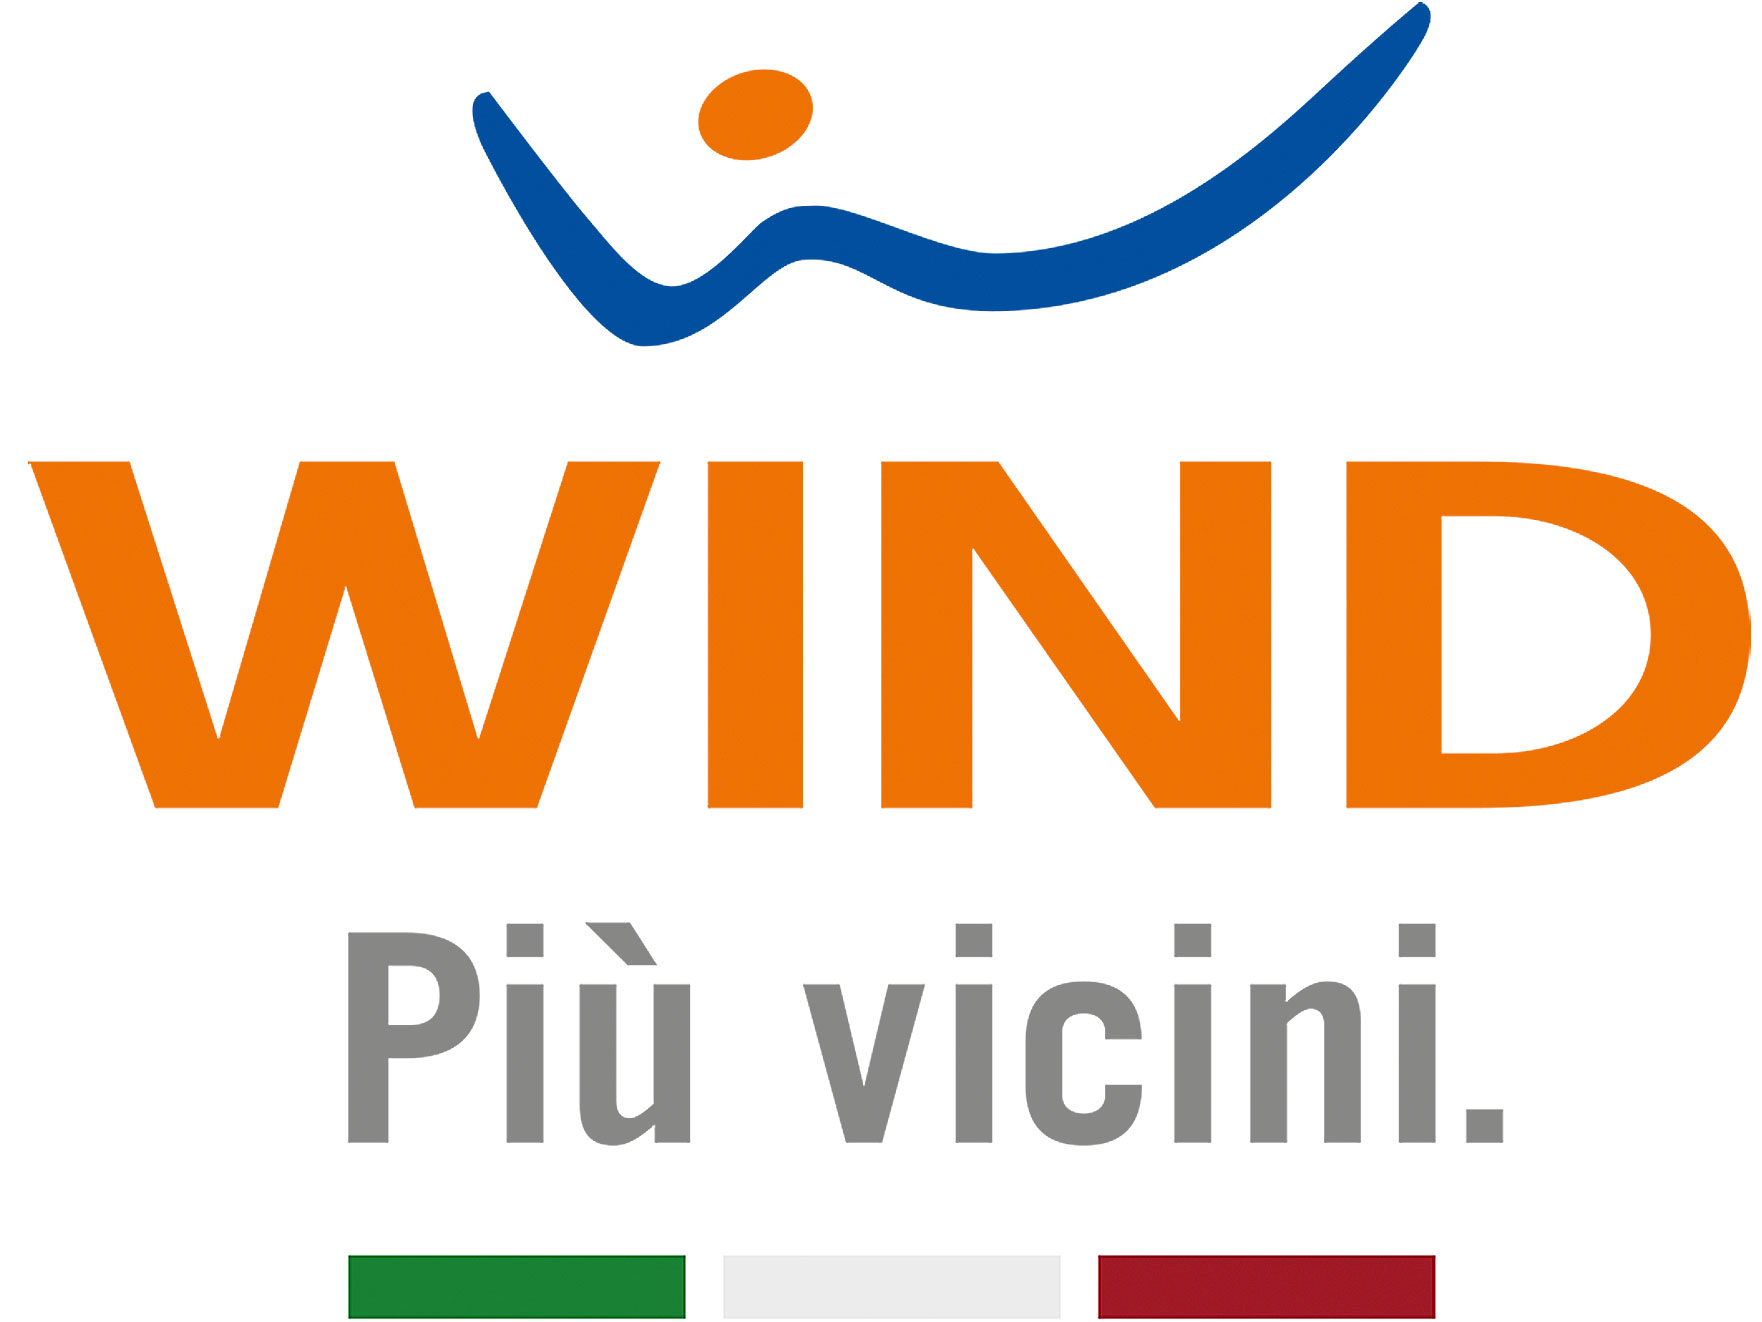 Wind Music Awards Celebration ufficiale: in cosa consiste la nuova offerta?